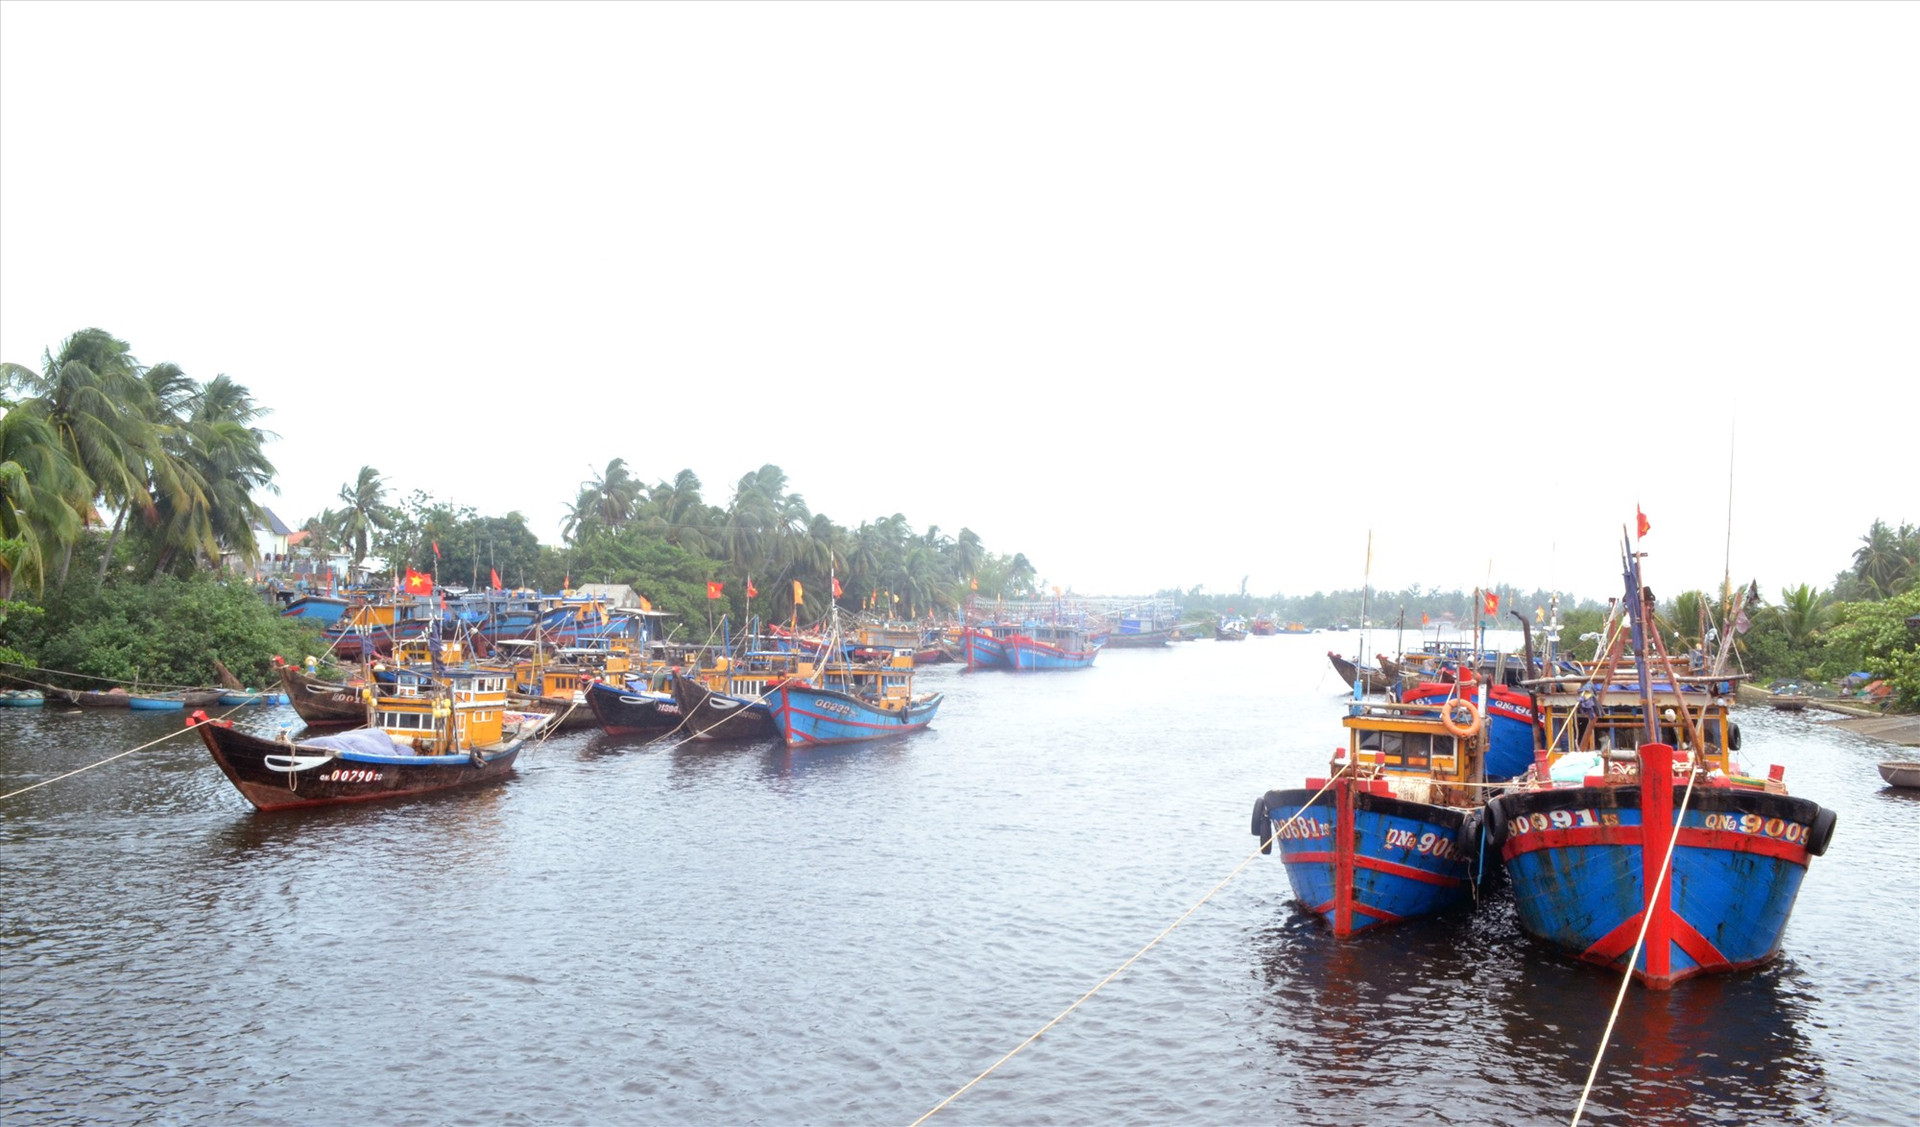 Ngư dân neo đậu tàu cá dọc sông Trường Giang, không đảm bảo an toàn trong mùa mưa bão. Ảnh: VIỆT NGUYỄN